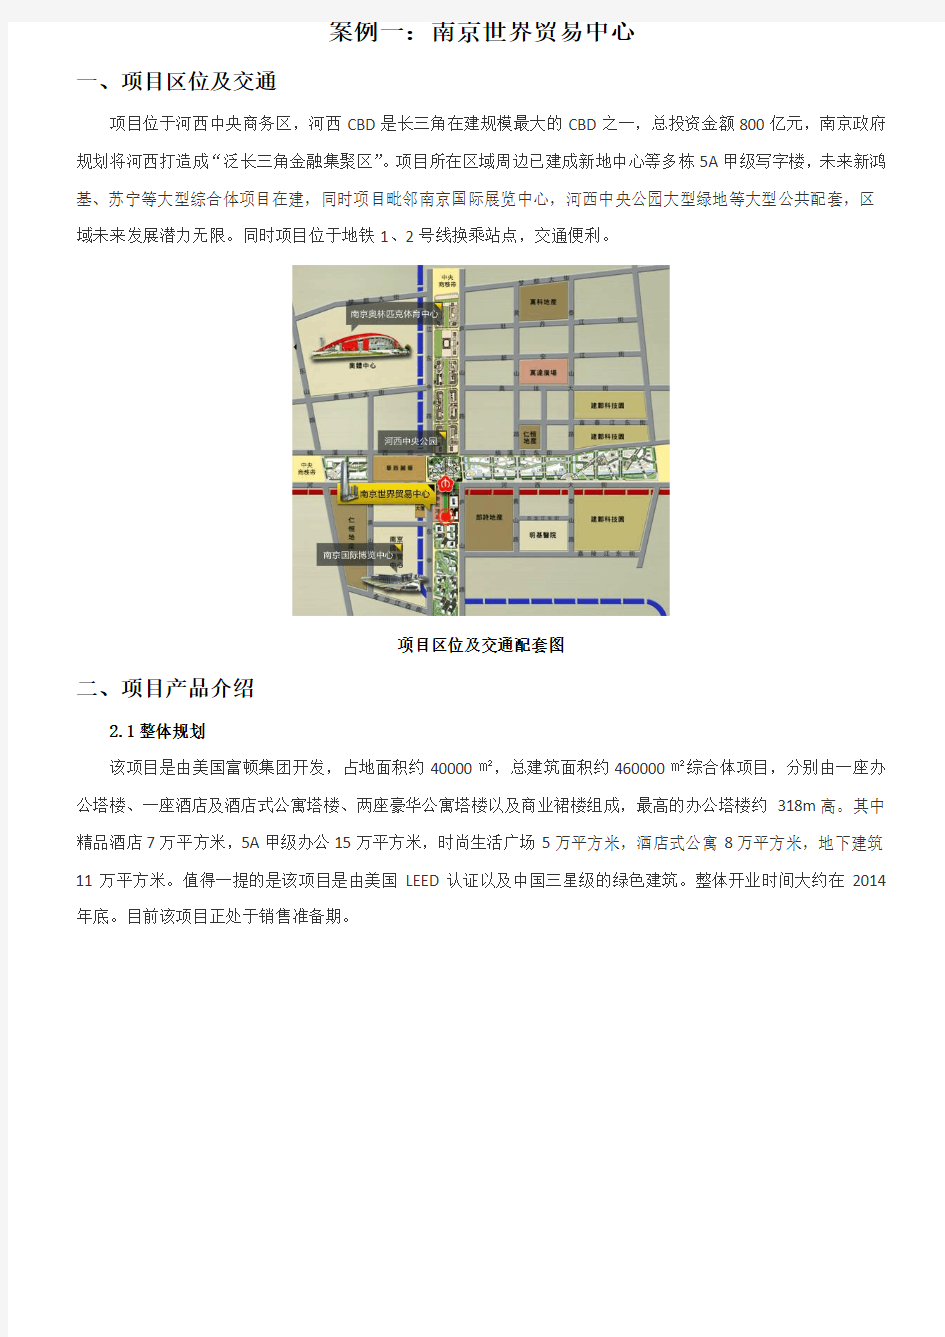 南京世界贸易中心及亚太商务楼案例